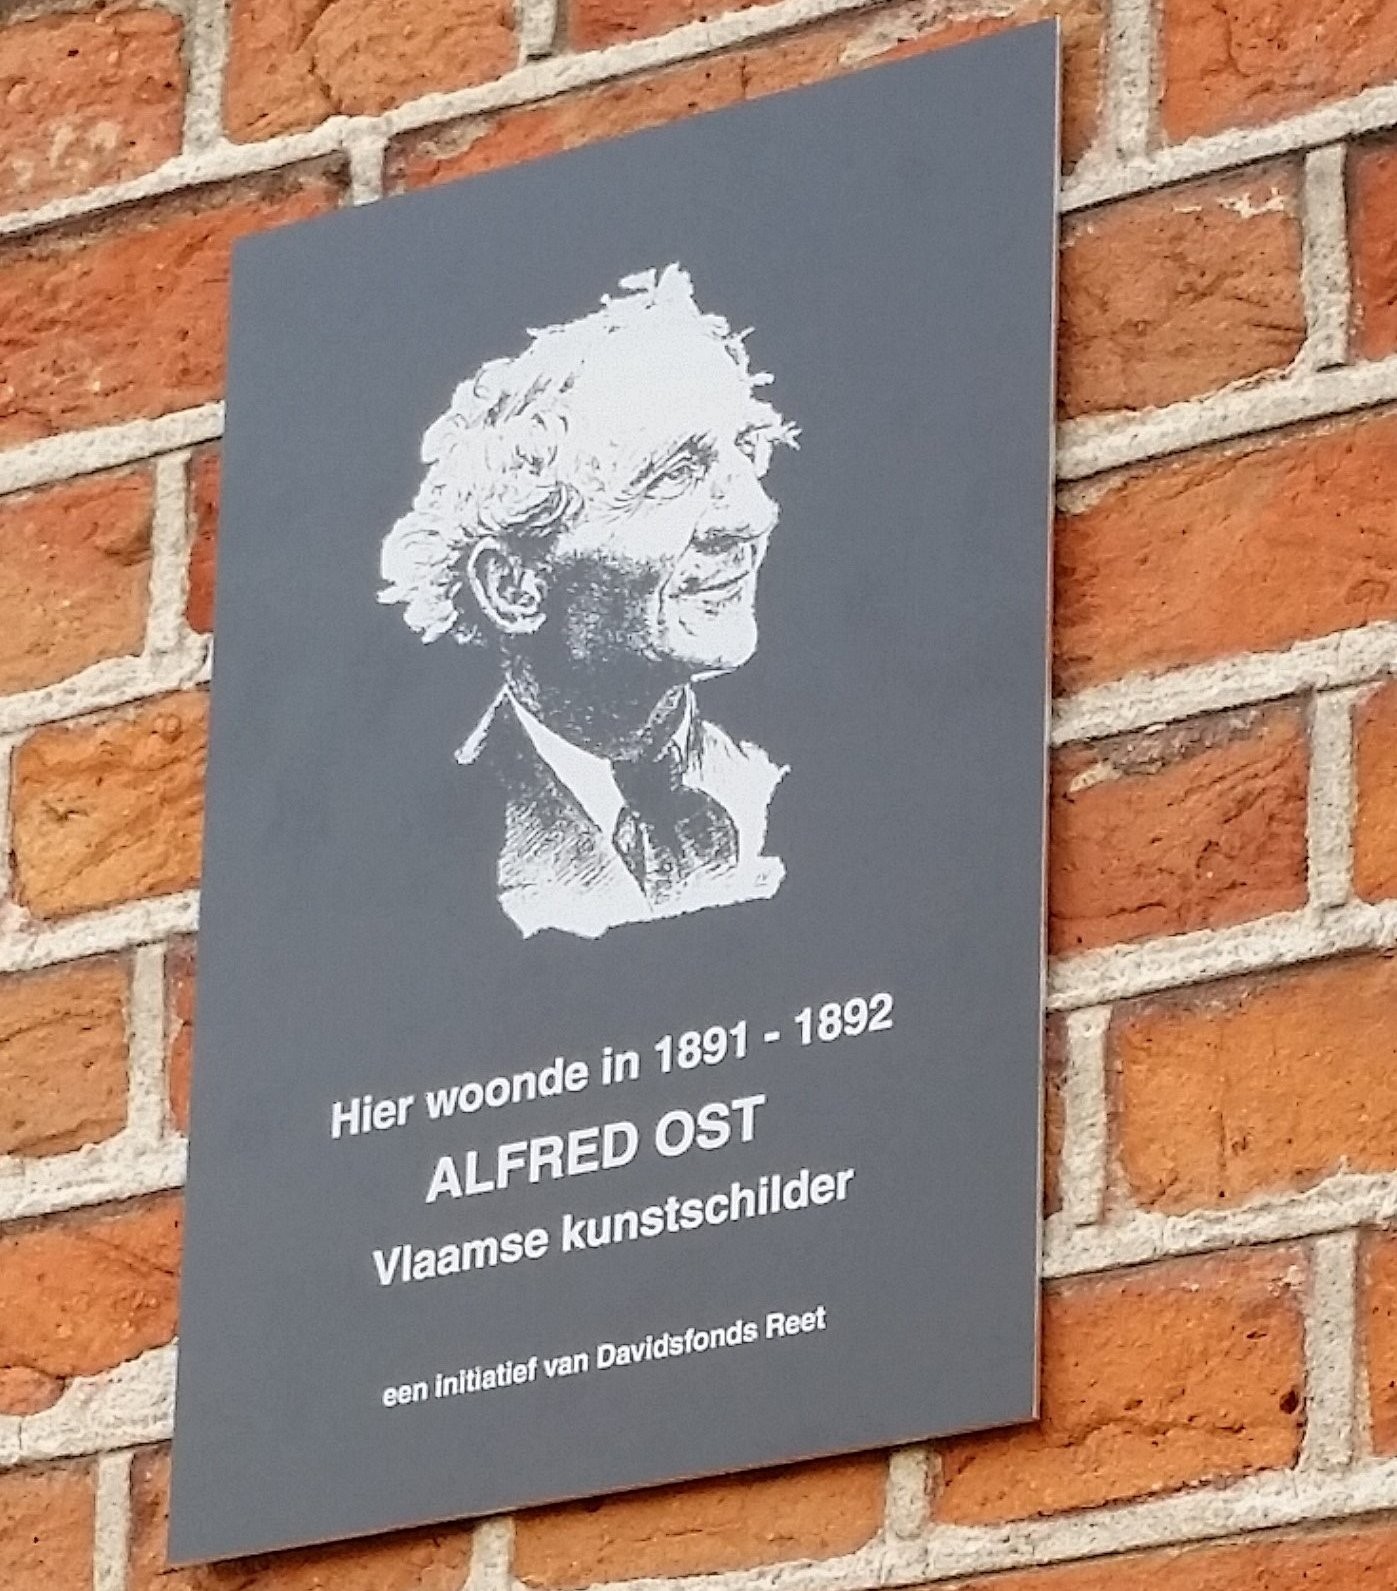 De beroemde Vlaamse kunstschilder Alfred Ost woonde in 1891 - 1892 in Reet. In 2015 kon Davidsfonds - Reet deze plaket aanbrengen aan het huis in de Eikenstraat waar hij toen woonde.